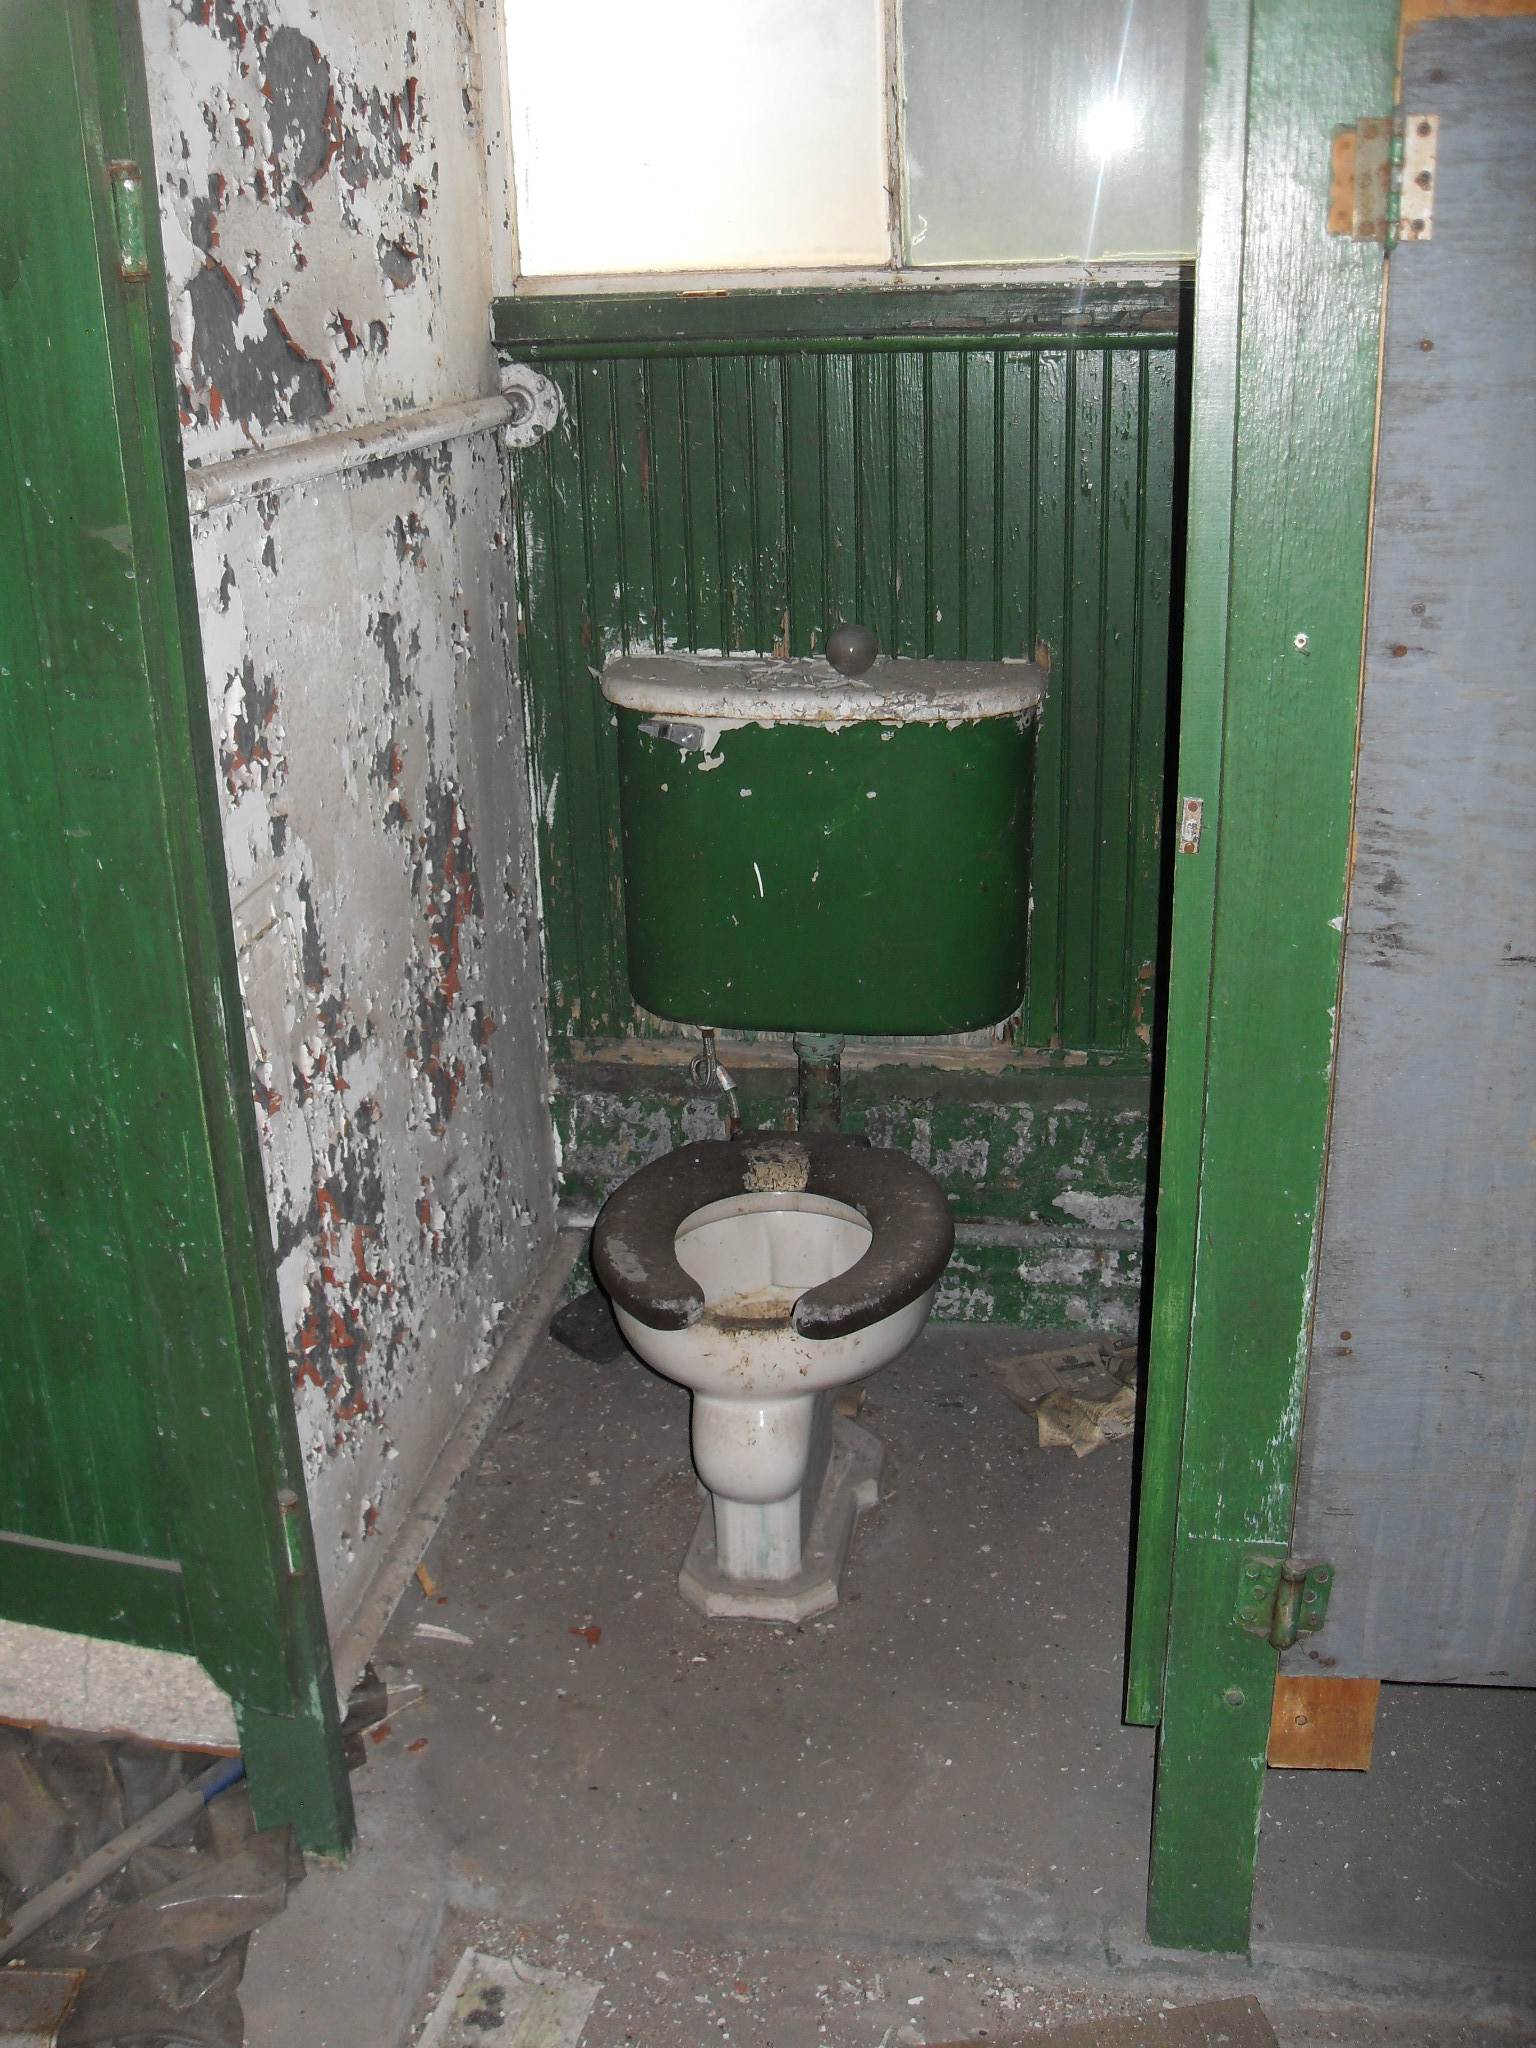 a nasty green bathroom has broken doors